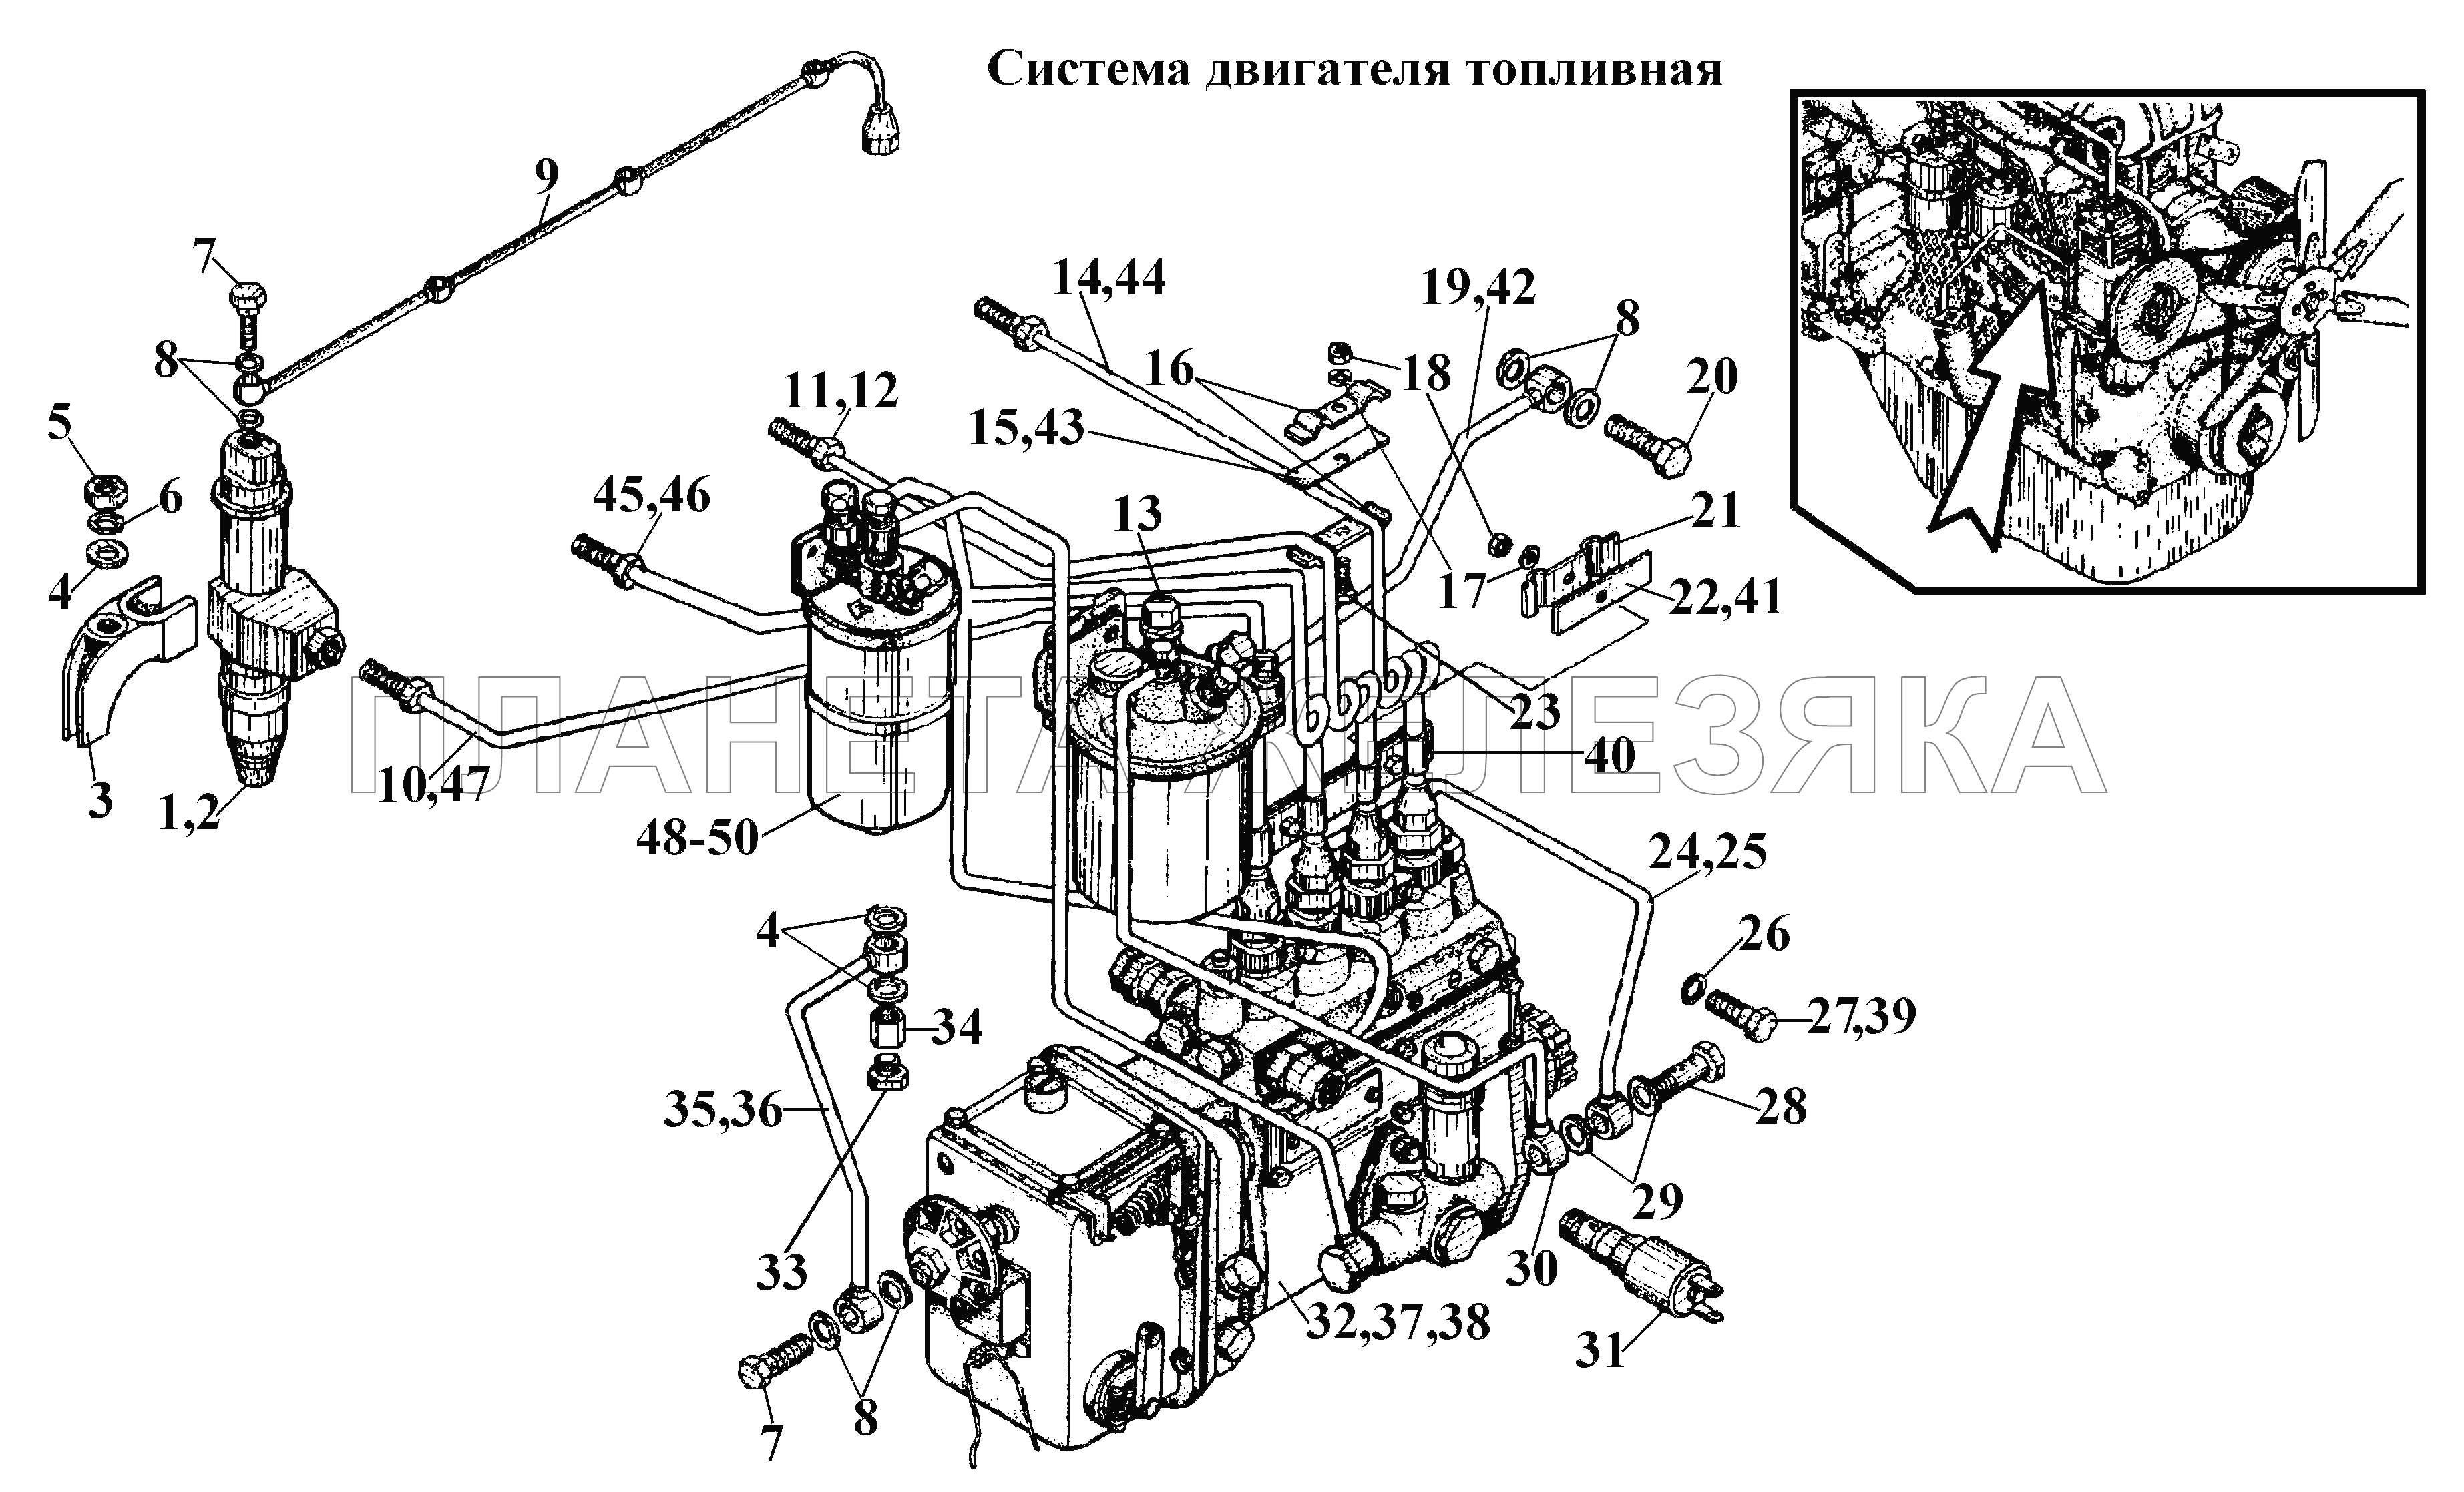 Система двигателя топливная ВТ-100Д